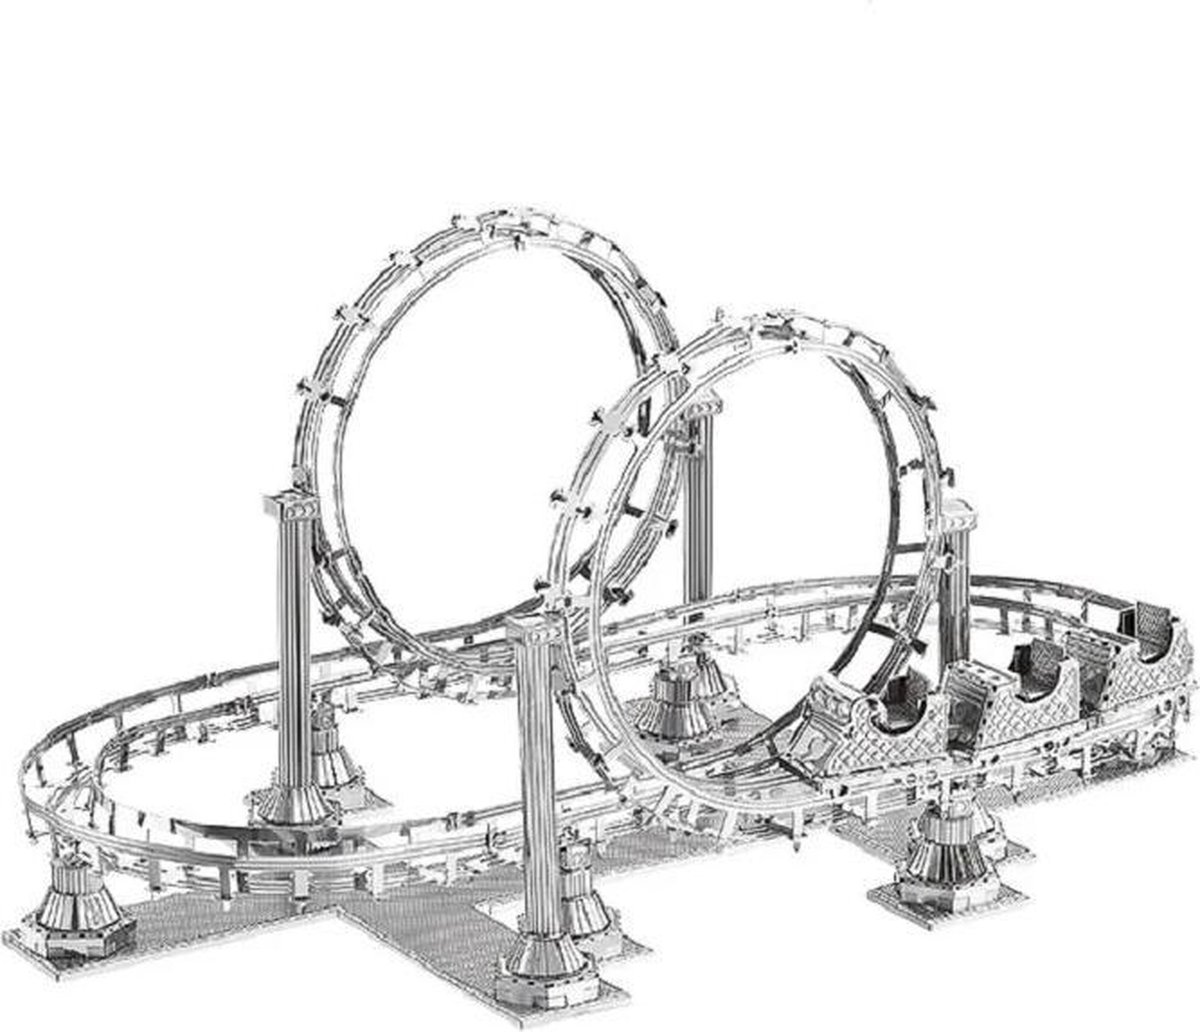 Bouwpakket Modelbouwpakket Rollercoaster Achtbaan- metaal | bol.com